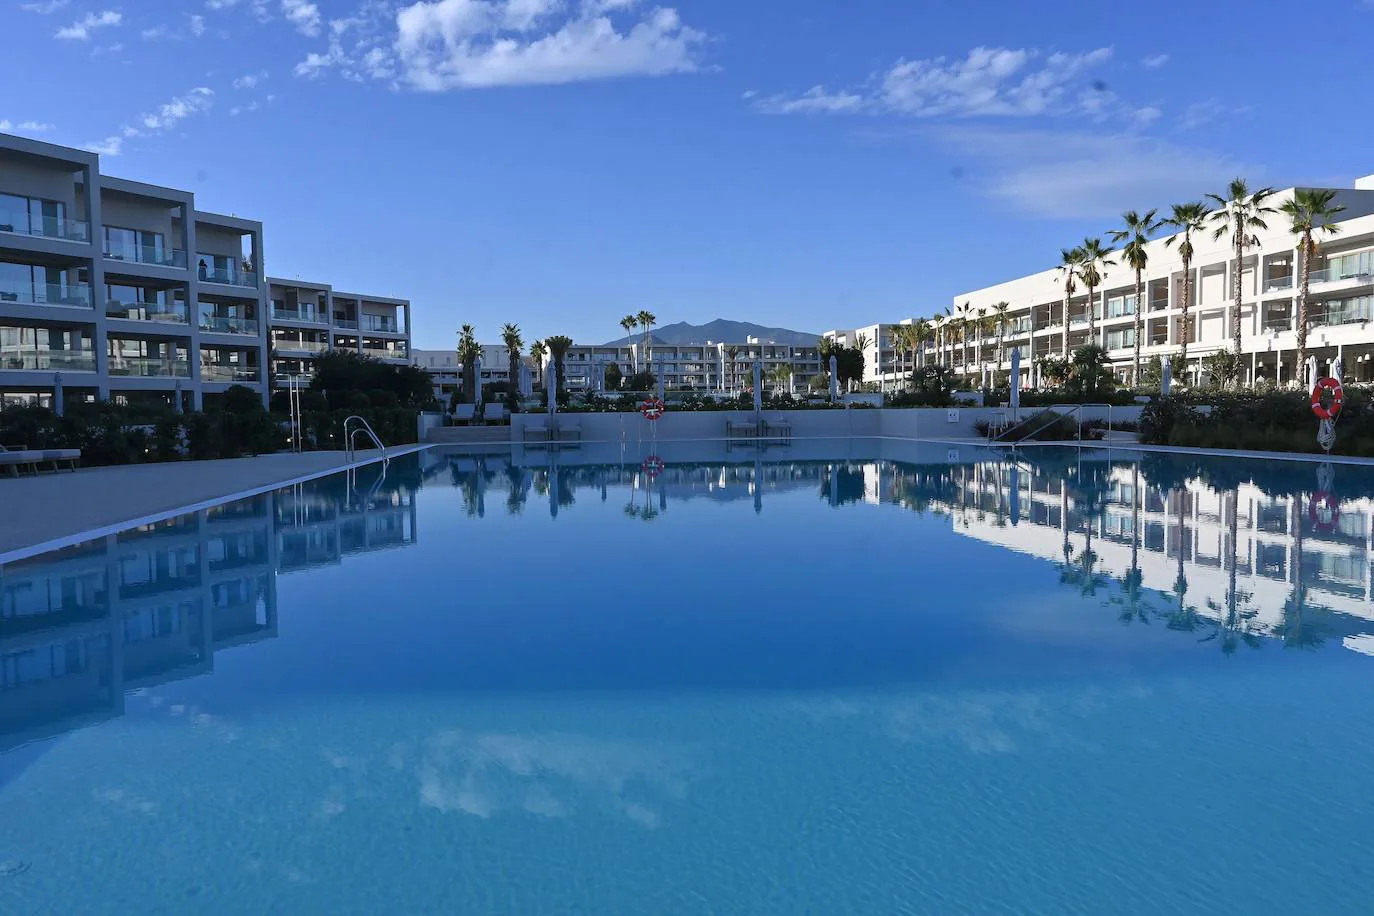 La cadena hotelera, de origen griego, desembarca así en el municipio con un ambicioso proyecto, en primera línea de playa, y con una oferta ambiciosa como resort de todo incluido gran lujo.